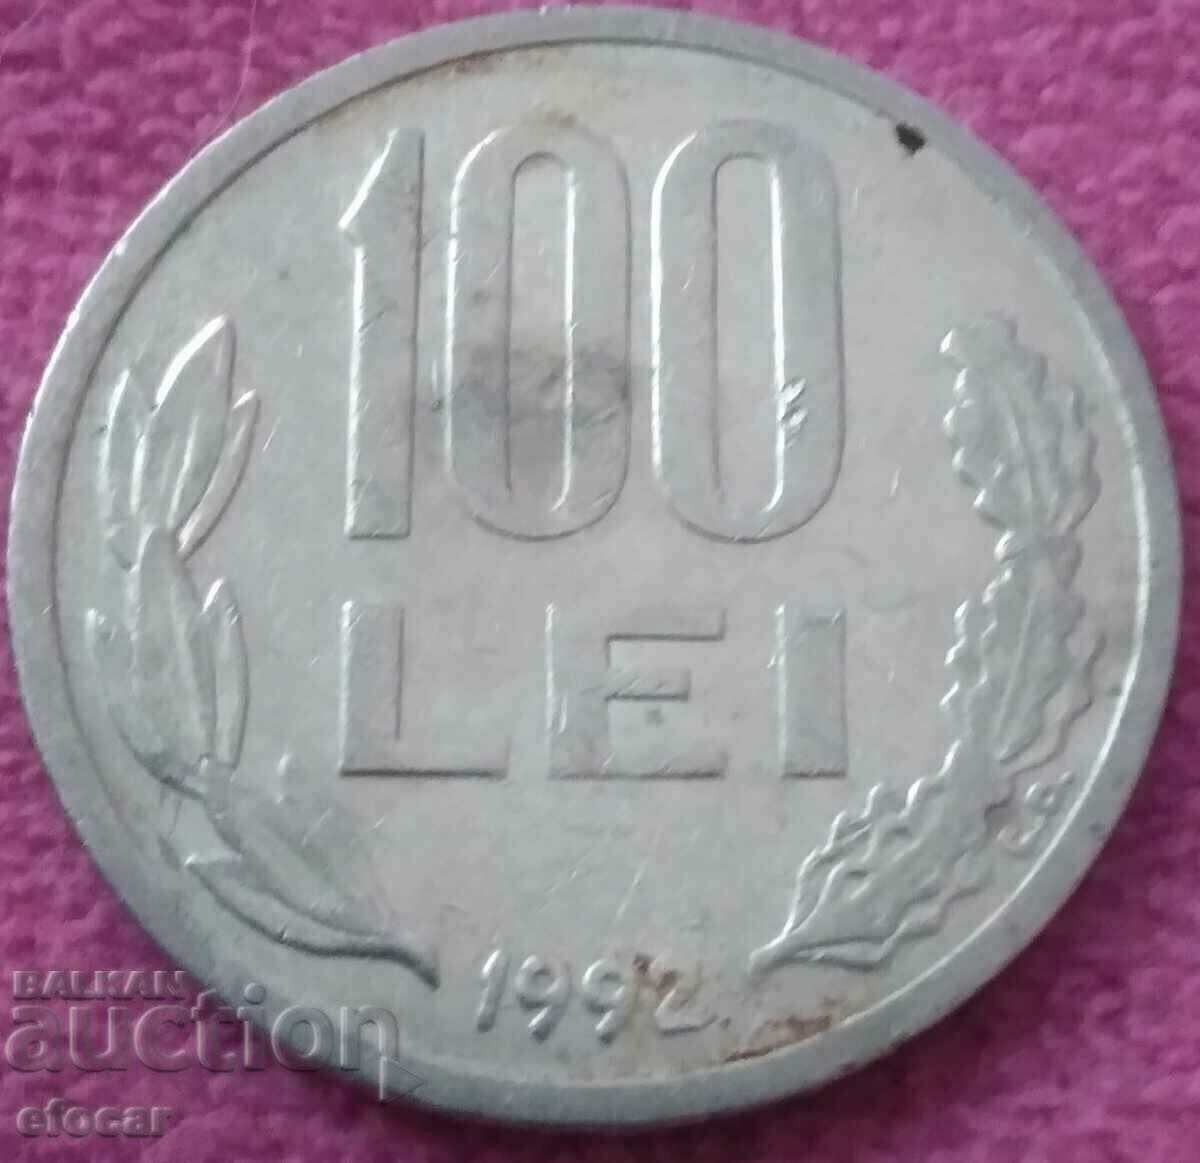 100 lei Romania 1992 start from 0.01